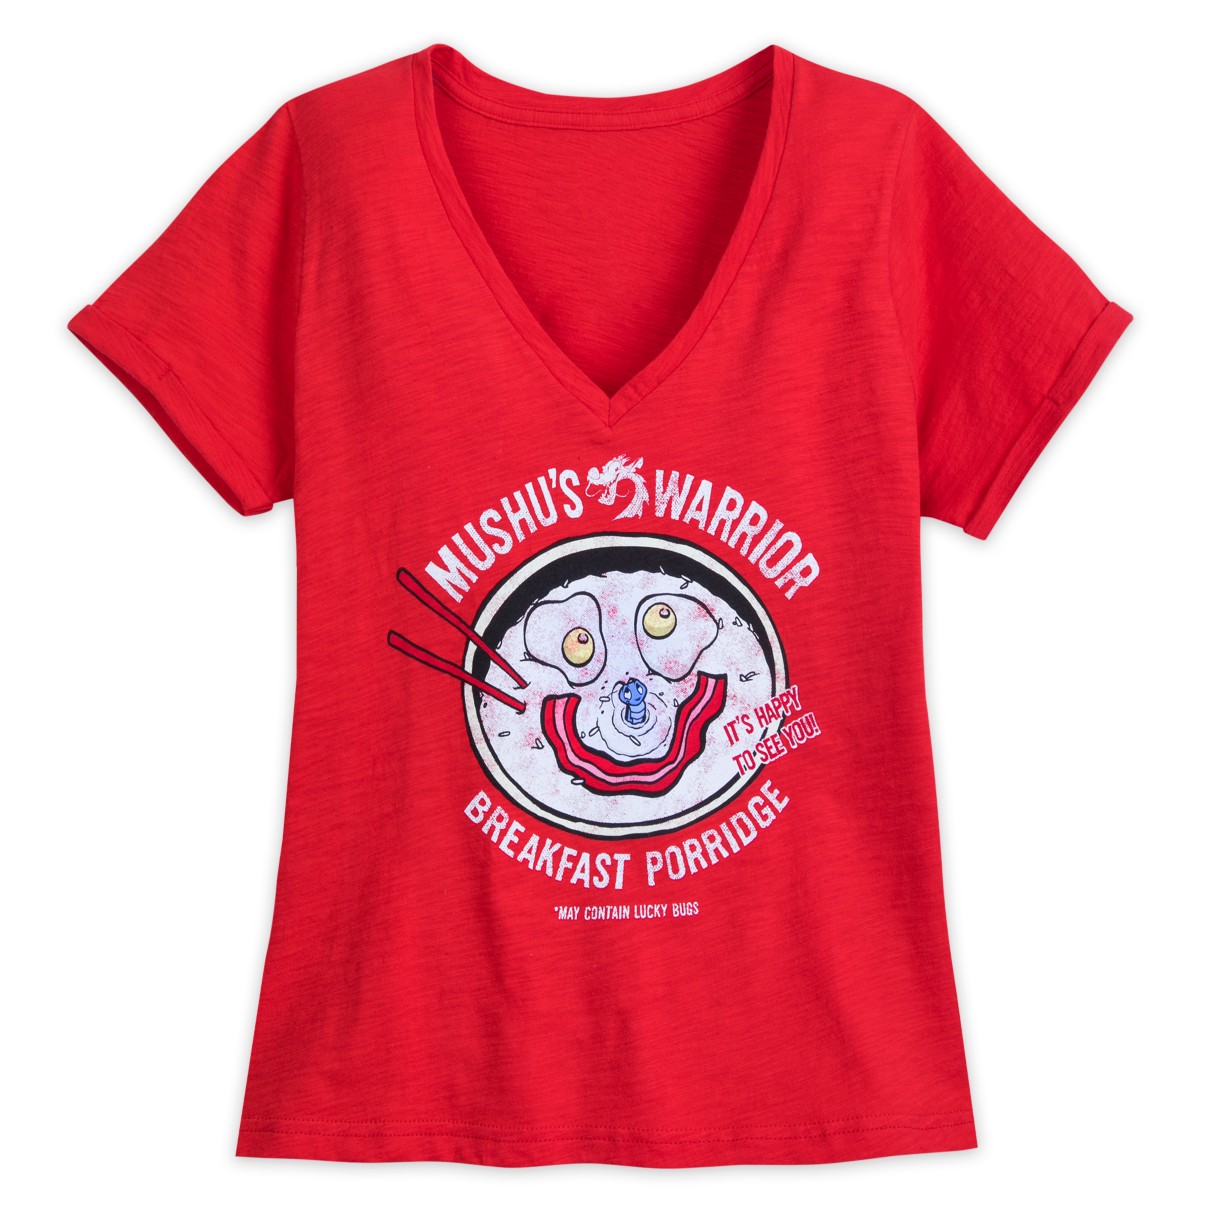 Mushu and Cri-Kee Fashion T-shirt for Women – Mulan